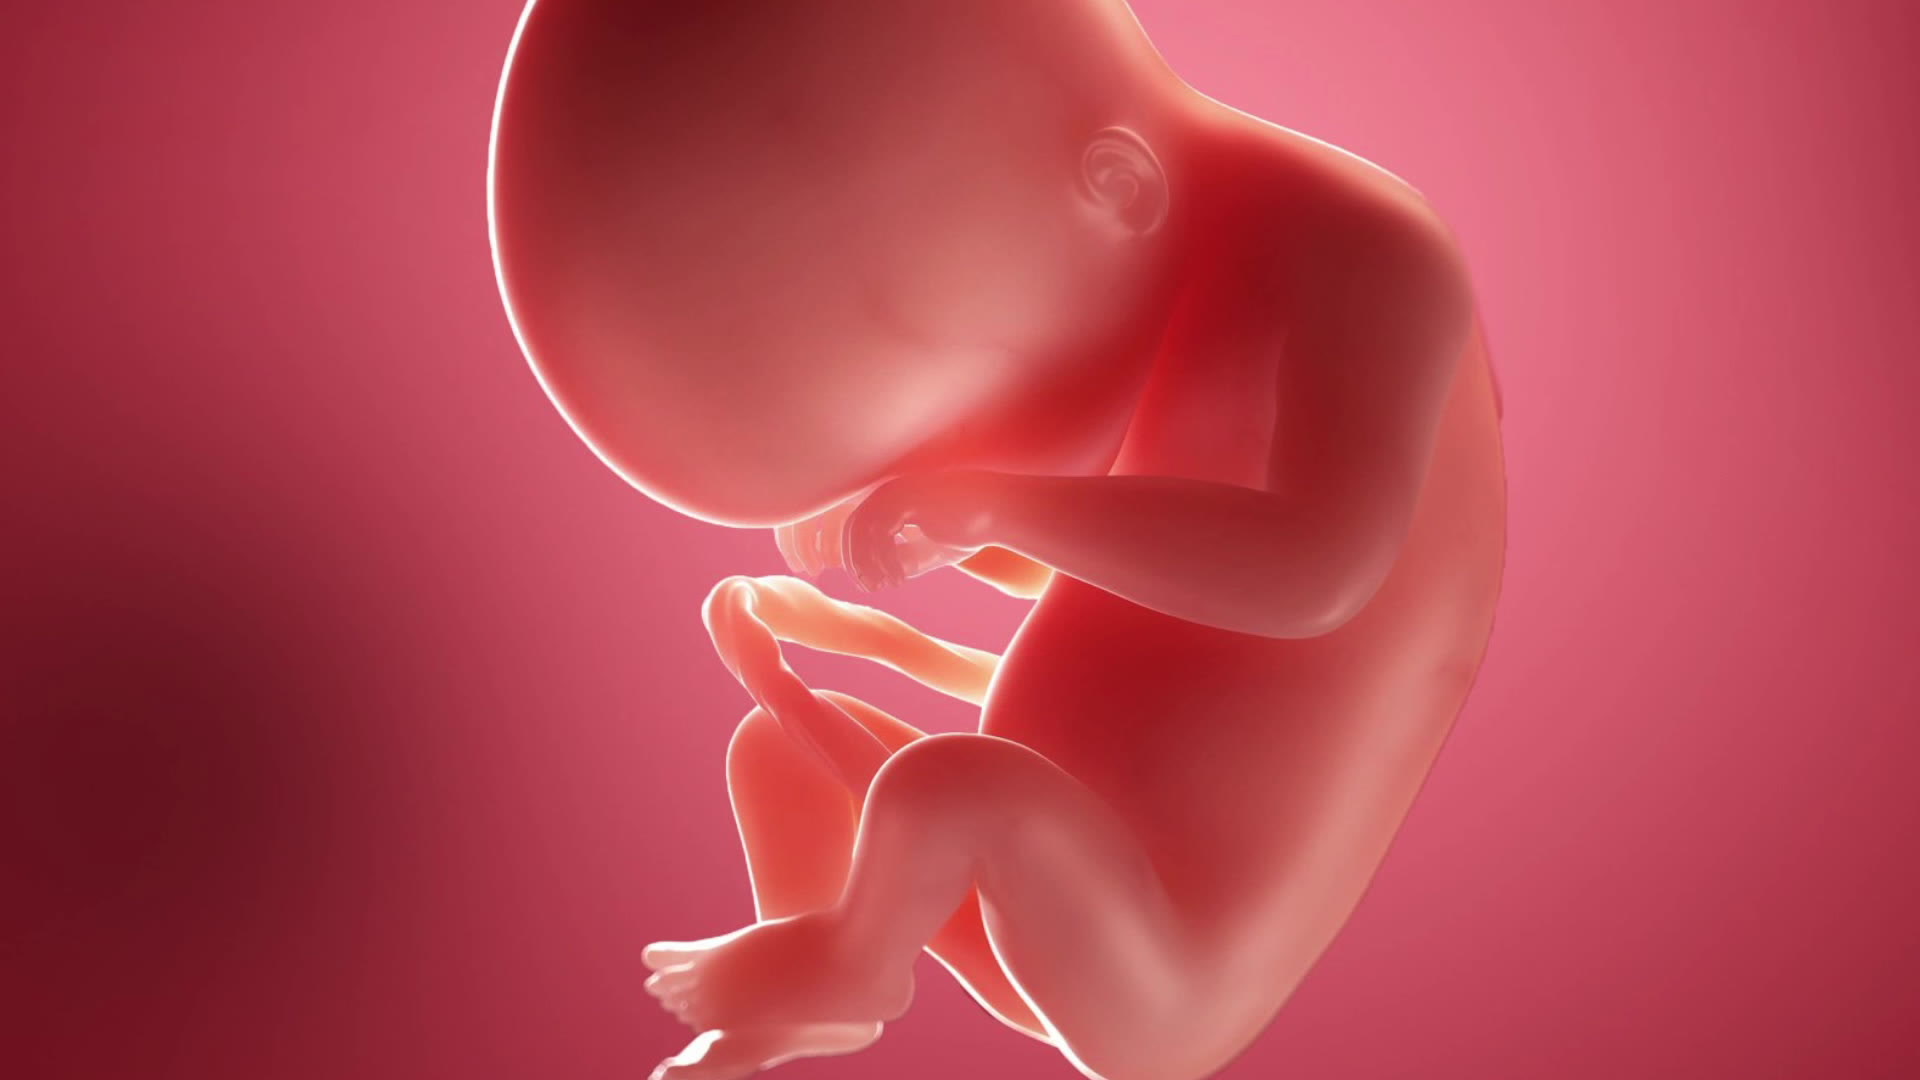 Semana 20 semana de embarazo: el bebé ya percibe a mamá